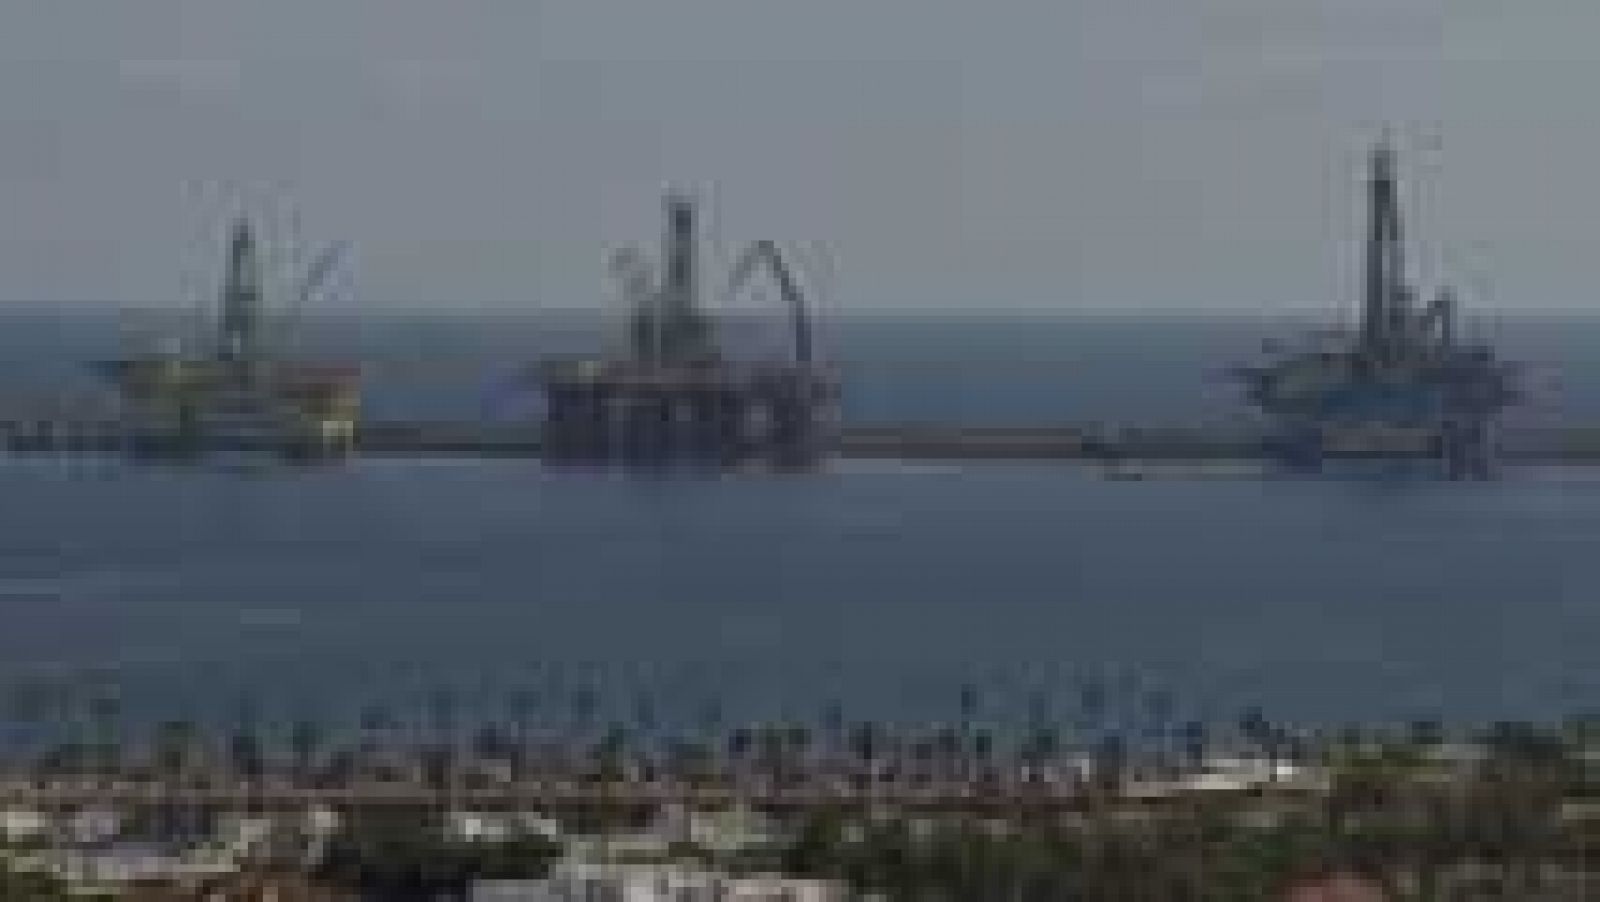 Industria autoriza a Repsol a ejecutar sondeos exploratorios en busca de hidrocarburos en Canarias